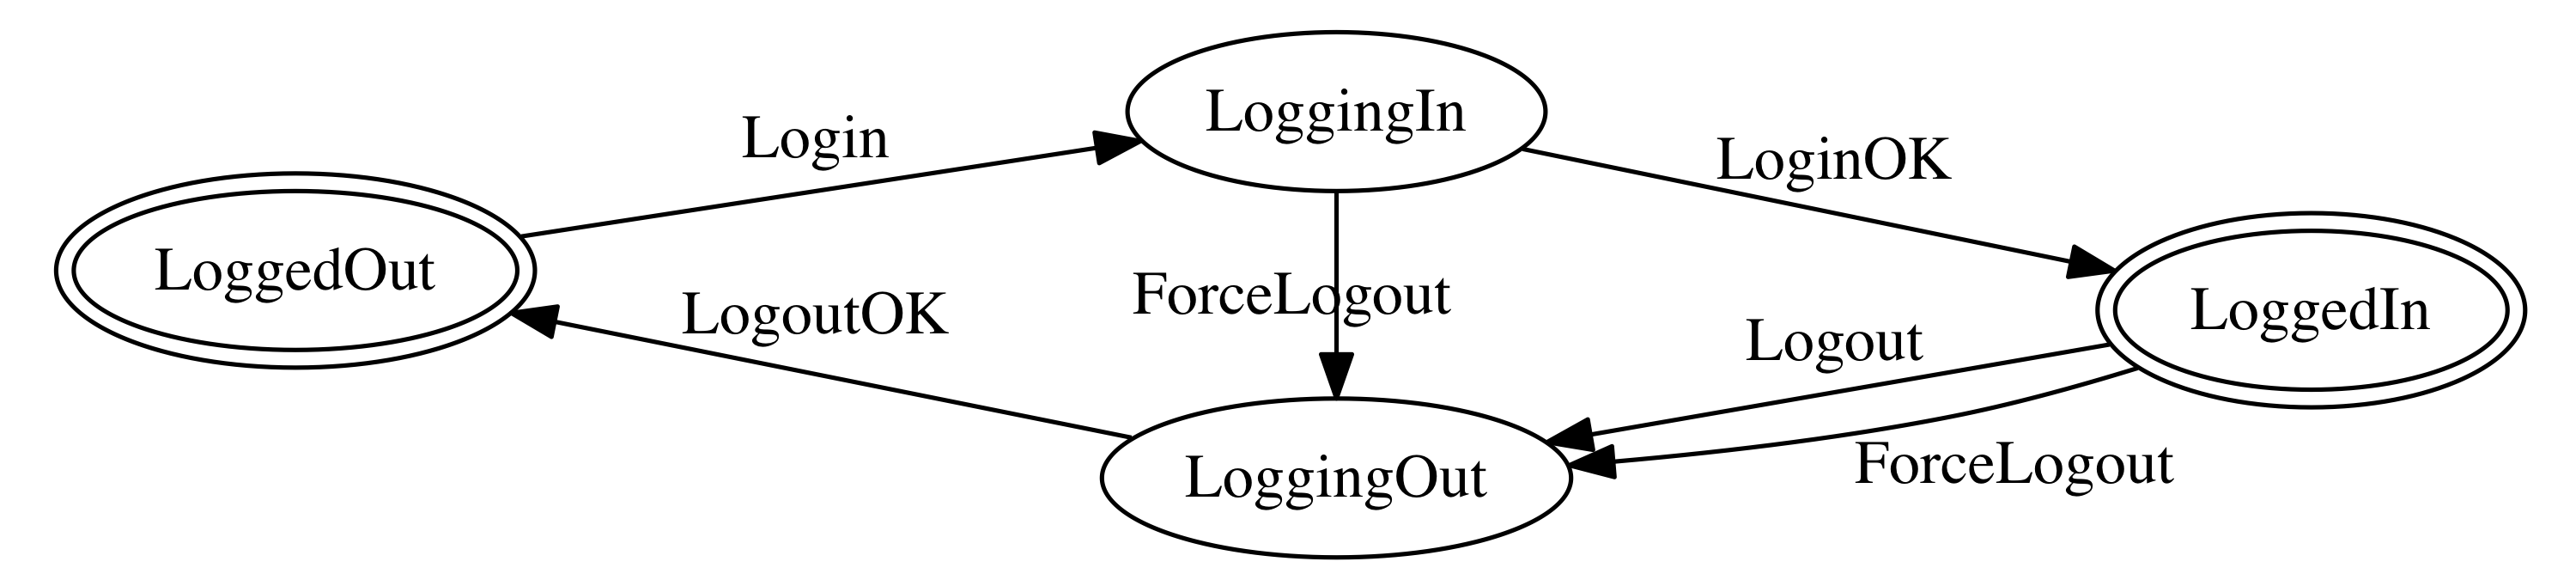 login-diagram.png